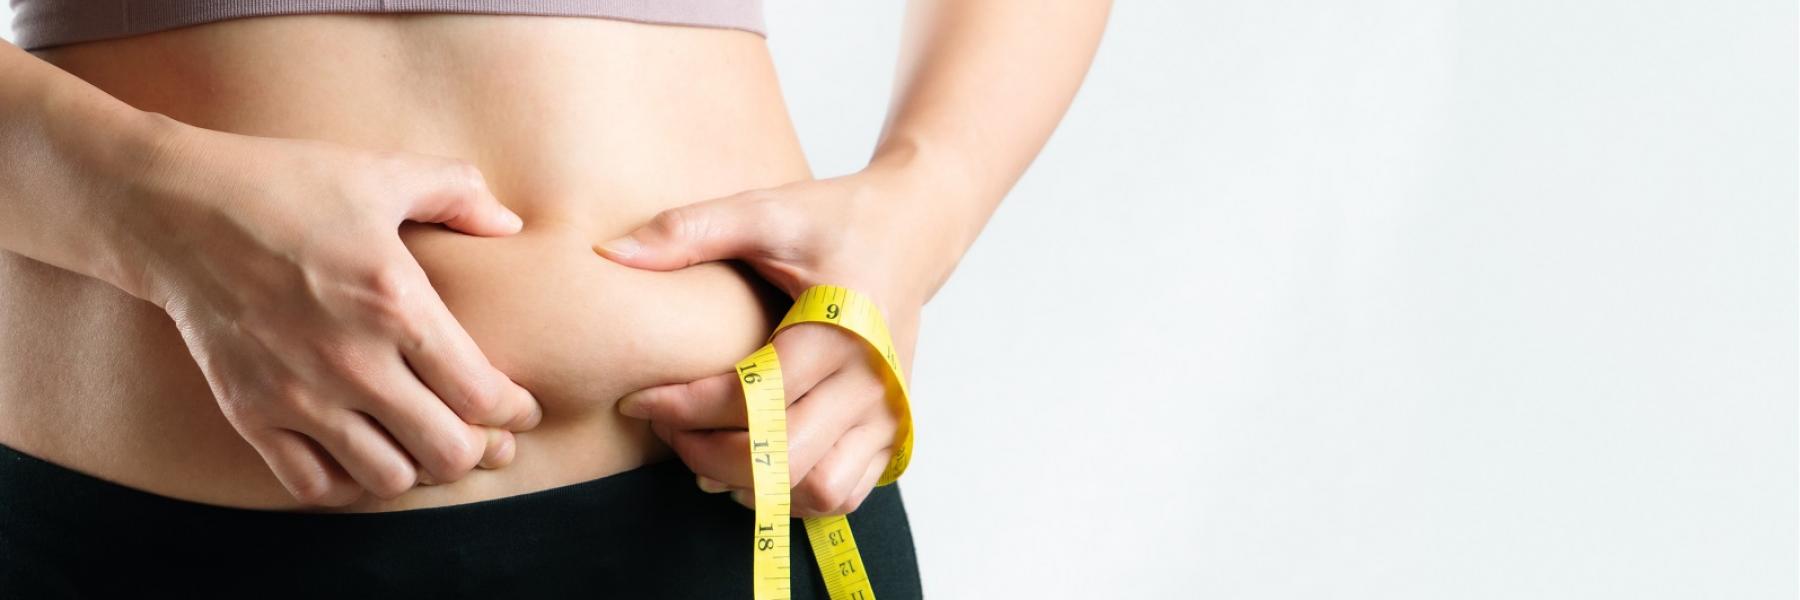 كيف تتحكمي بذكاء في هرموناتك المسببة زيادة في الوزن؟